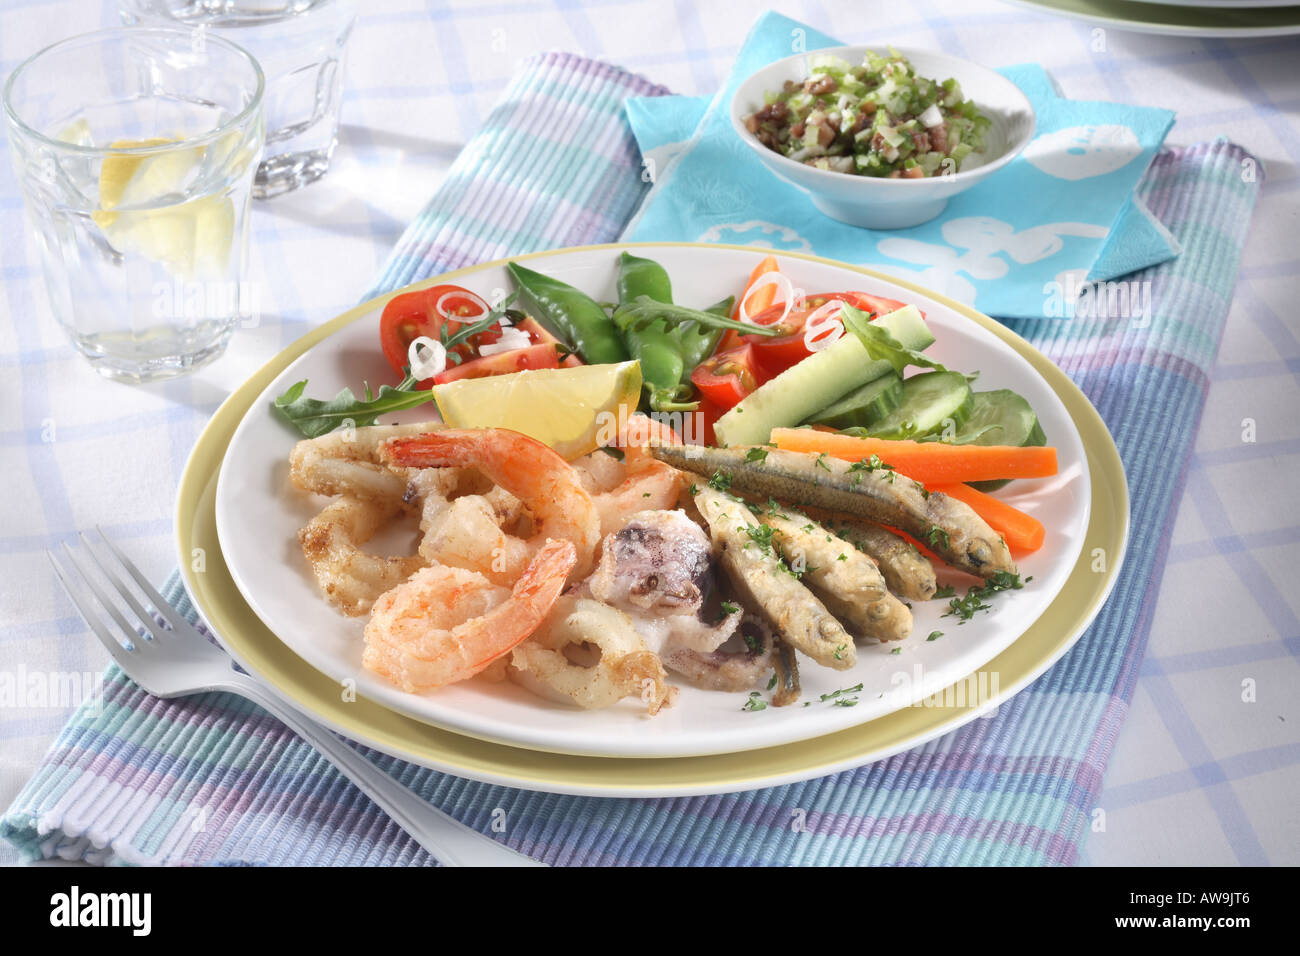 sea-fruit-with-vegetable-salad-AW9JT6.jpg.54a09712e9a18b55780fdadc056c433f.jpg